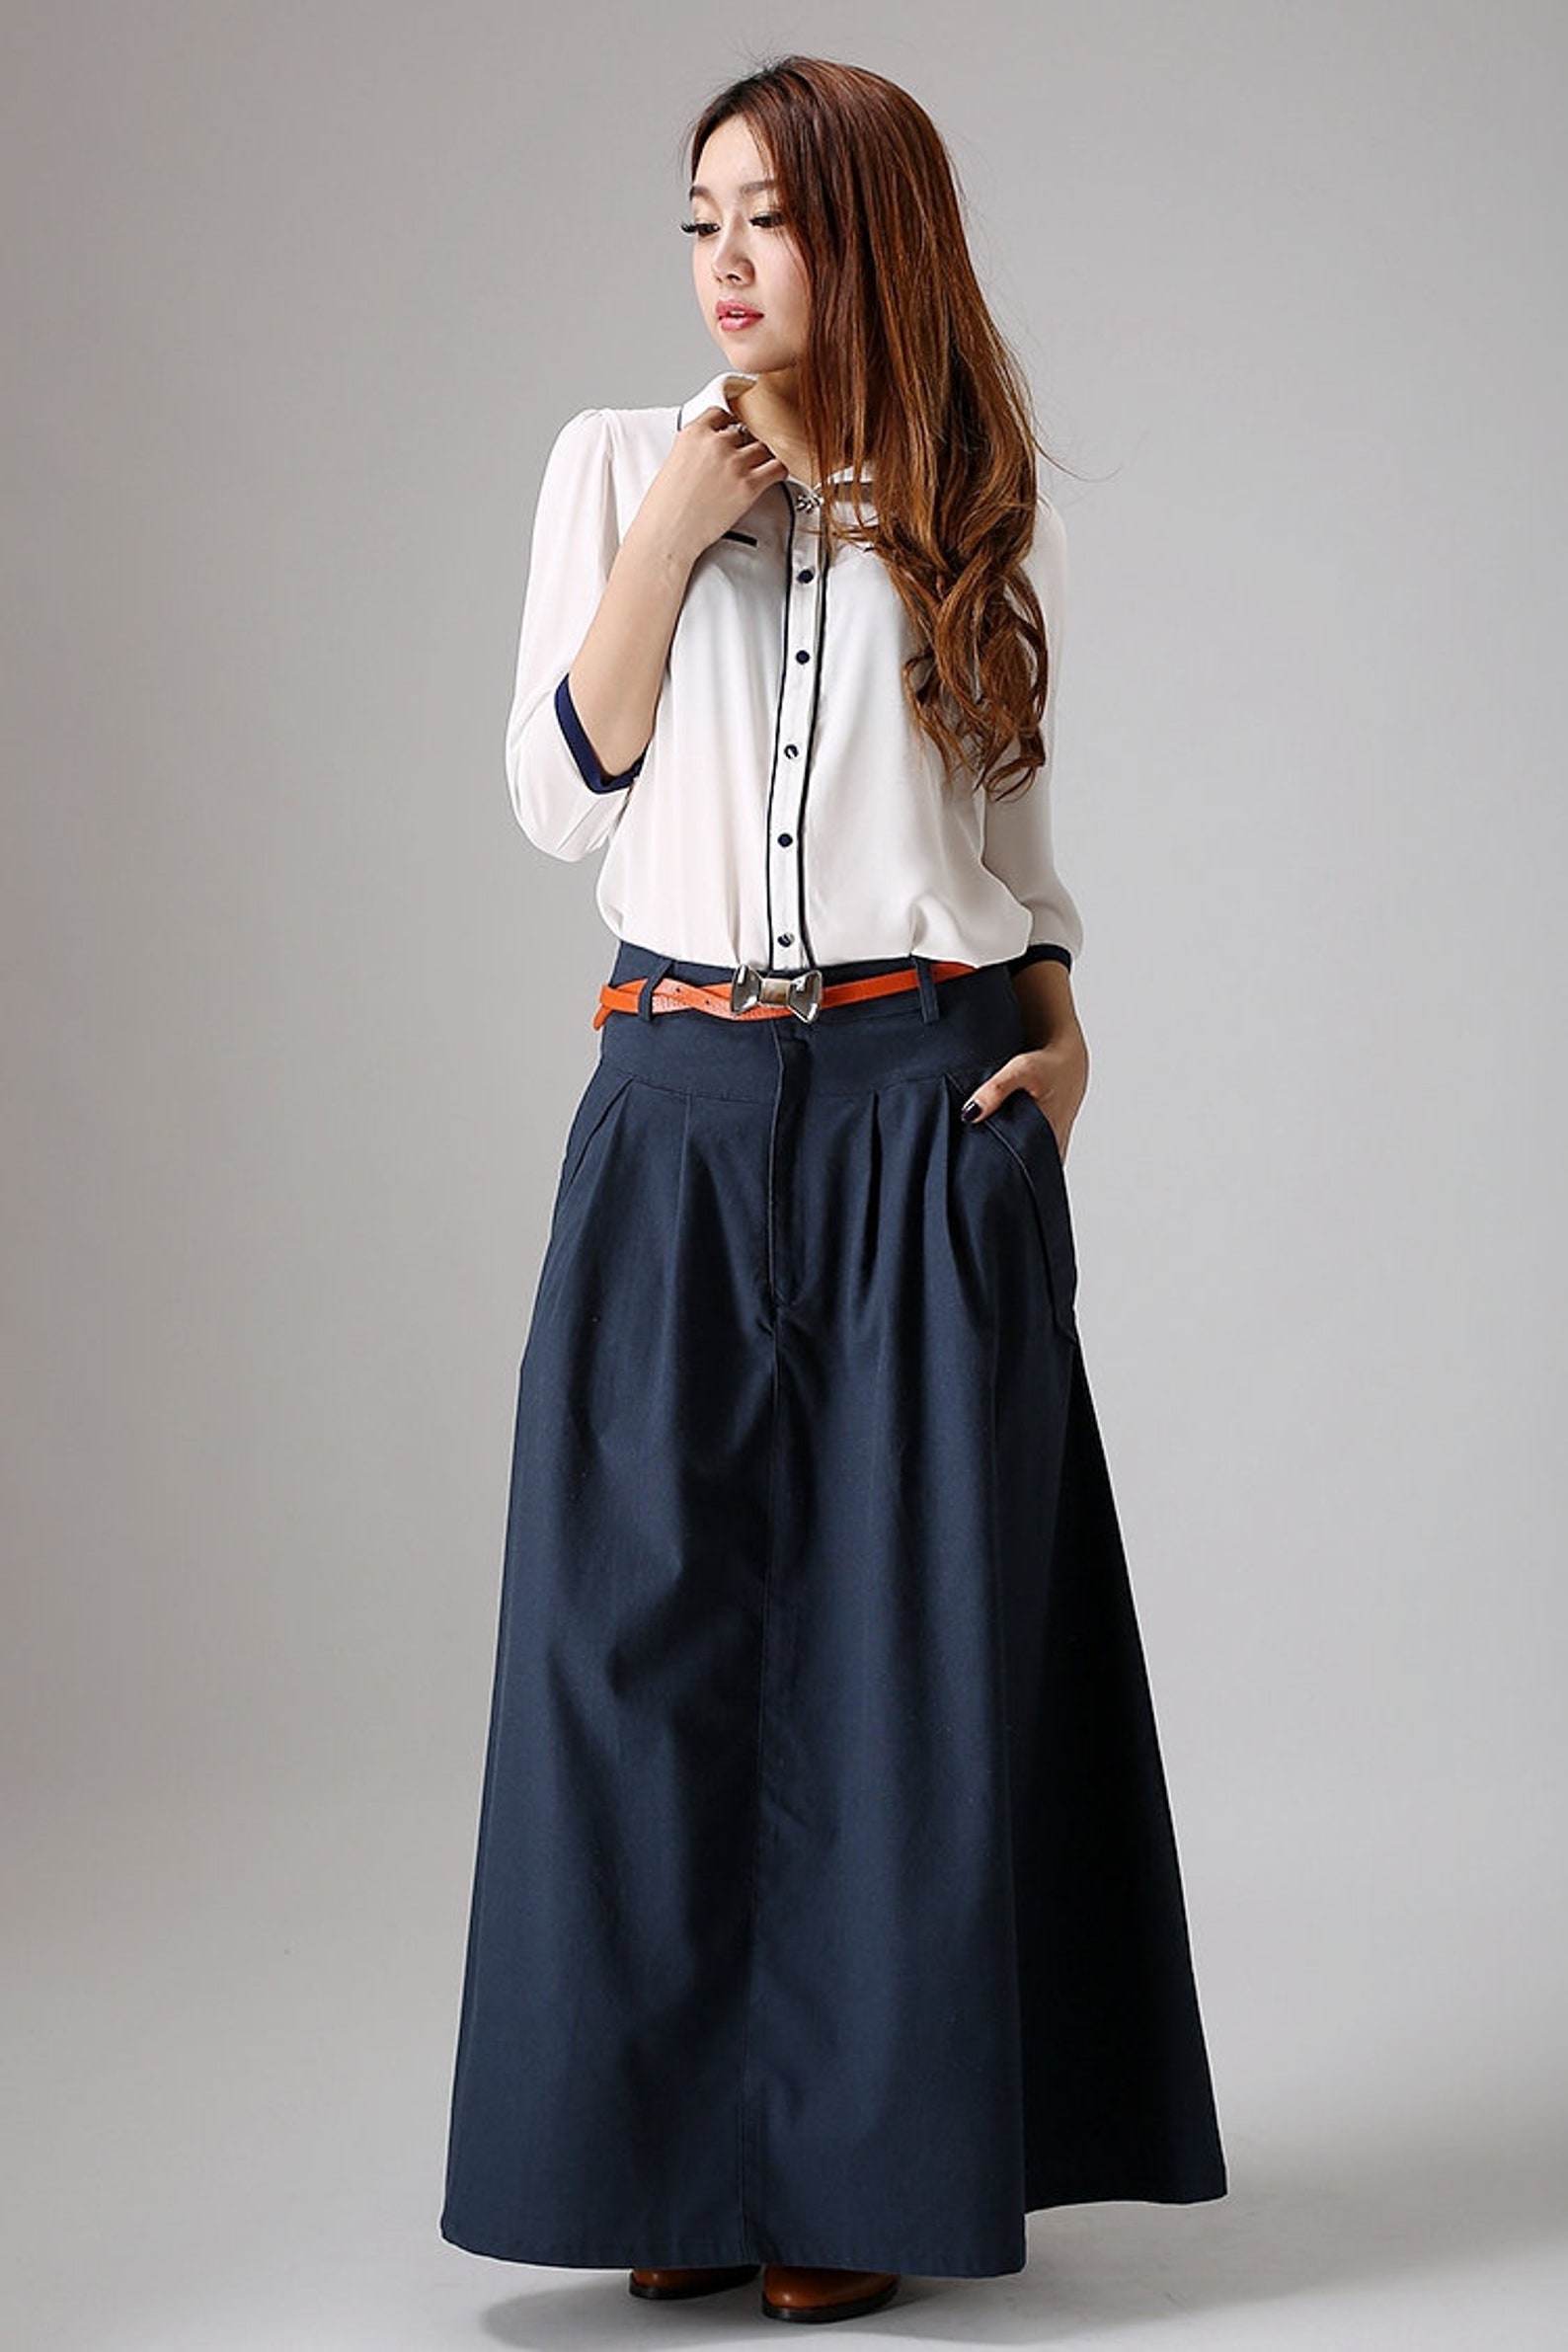 A Line Maxi Skirt Linen Skirt Long Linen Skirt Gray Skirt | Etsy